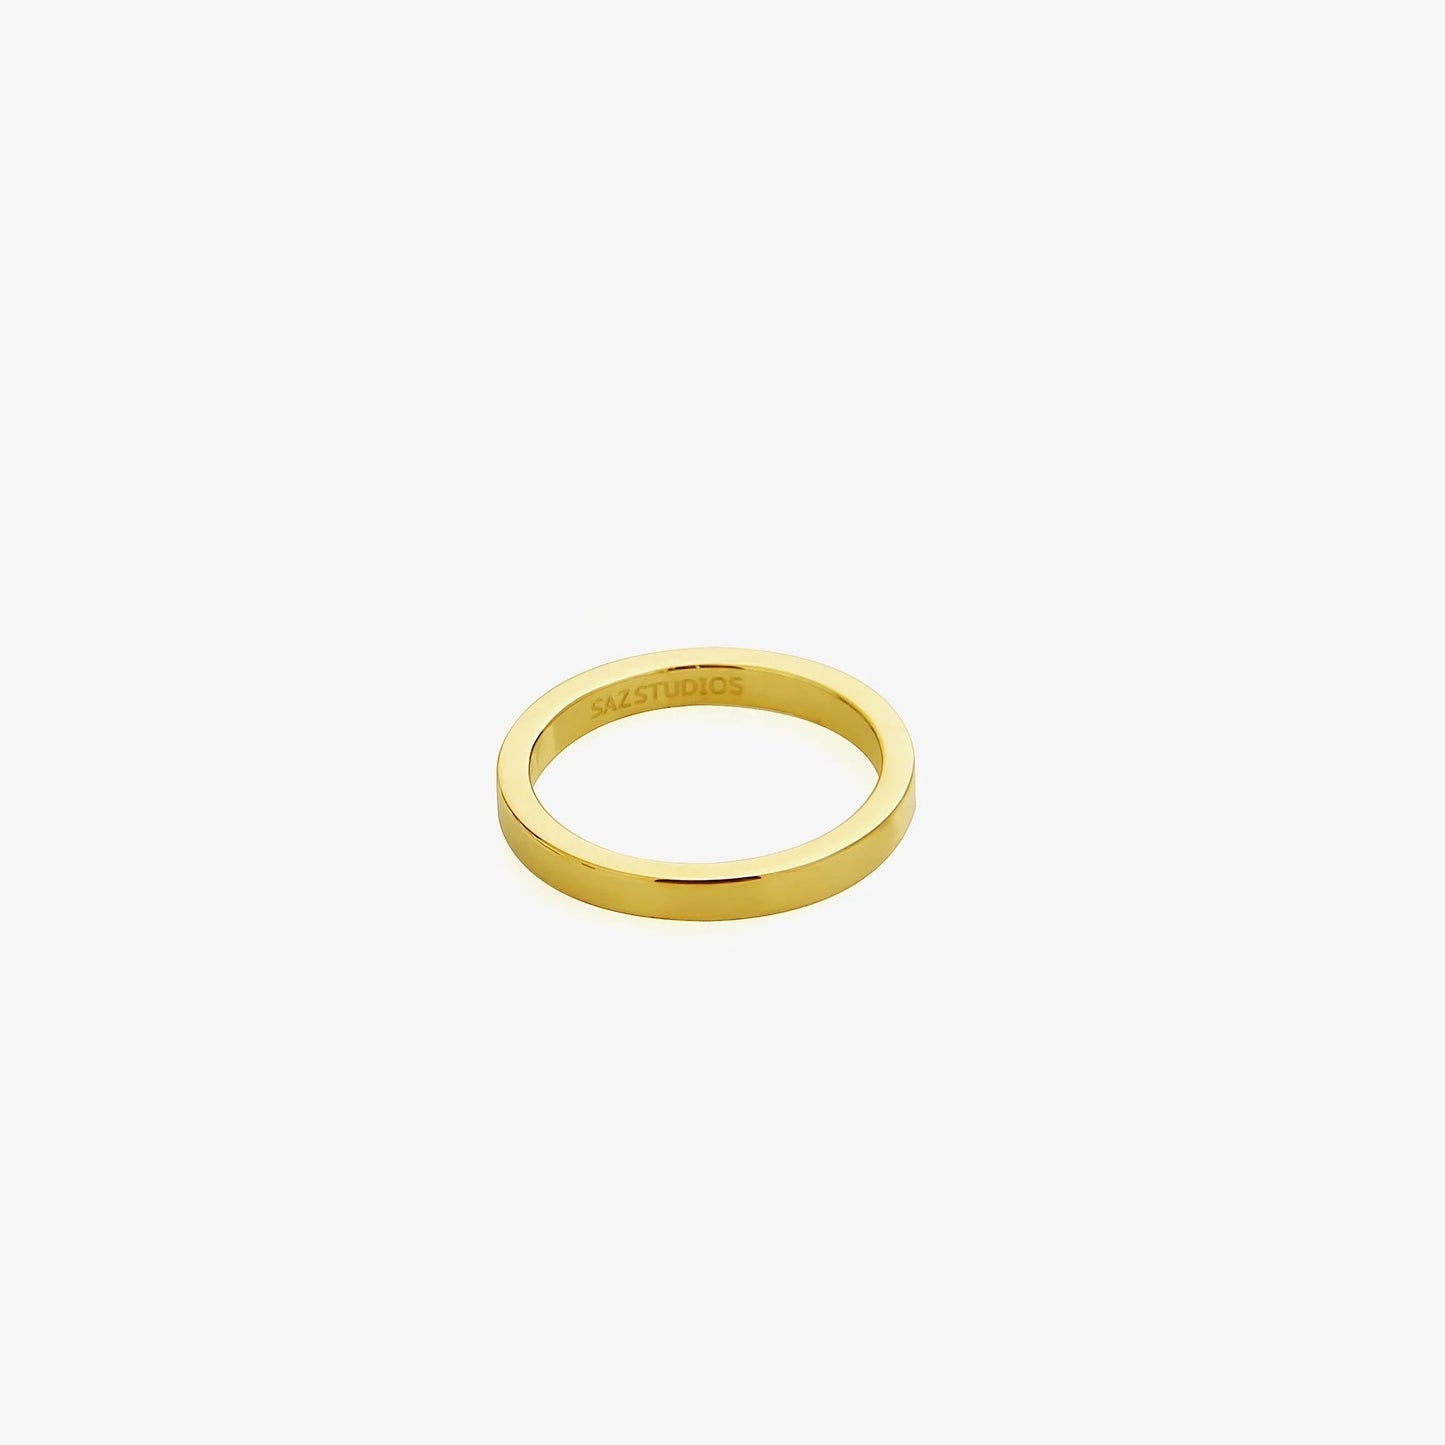 Basic Glossy Metal Ring